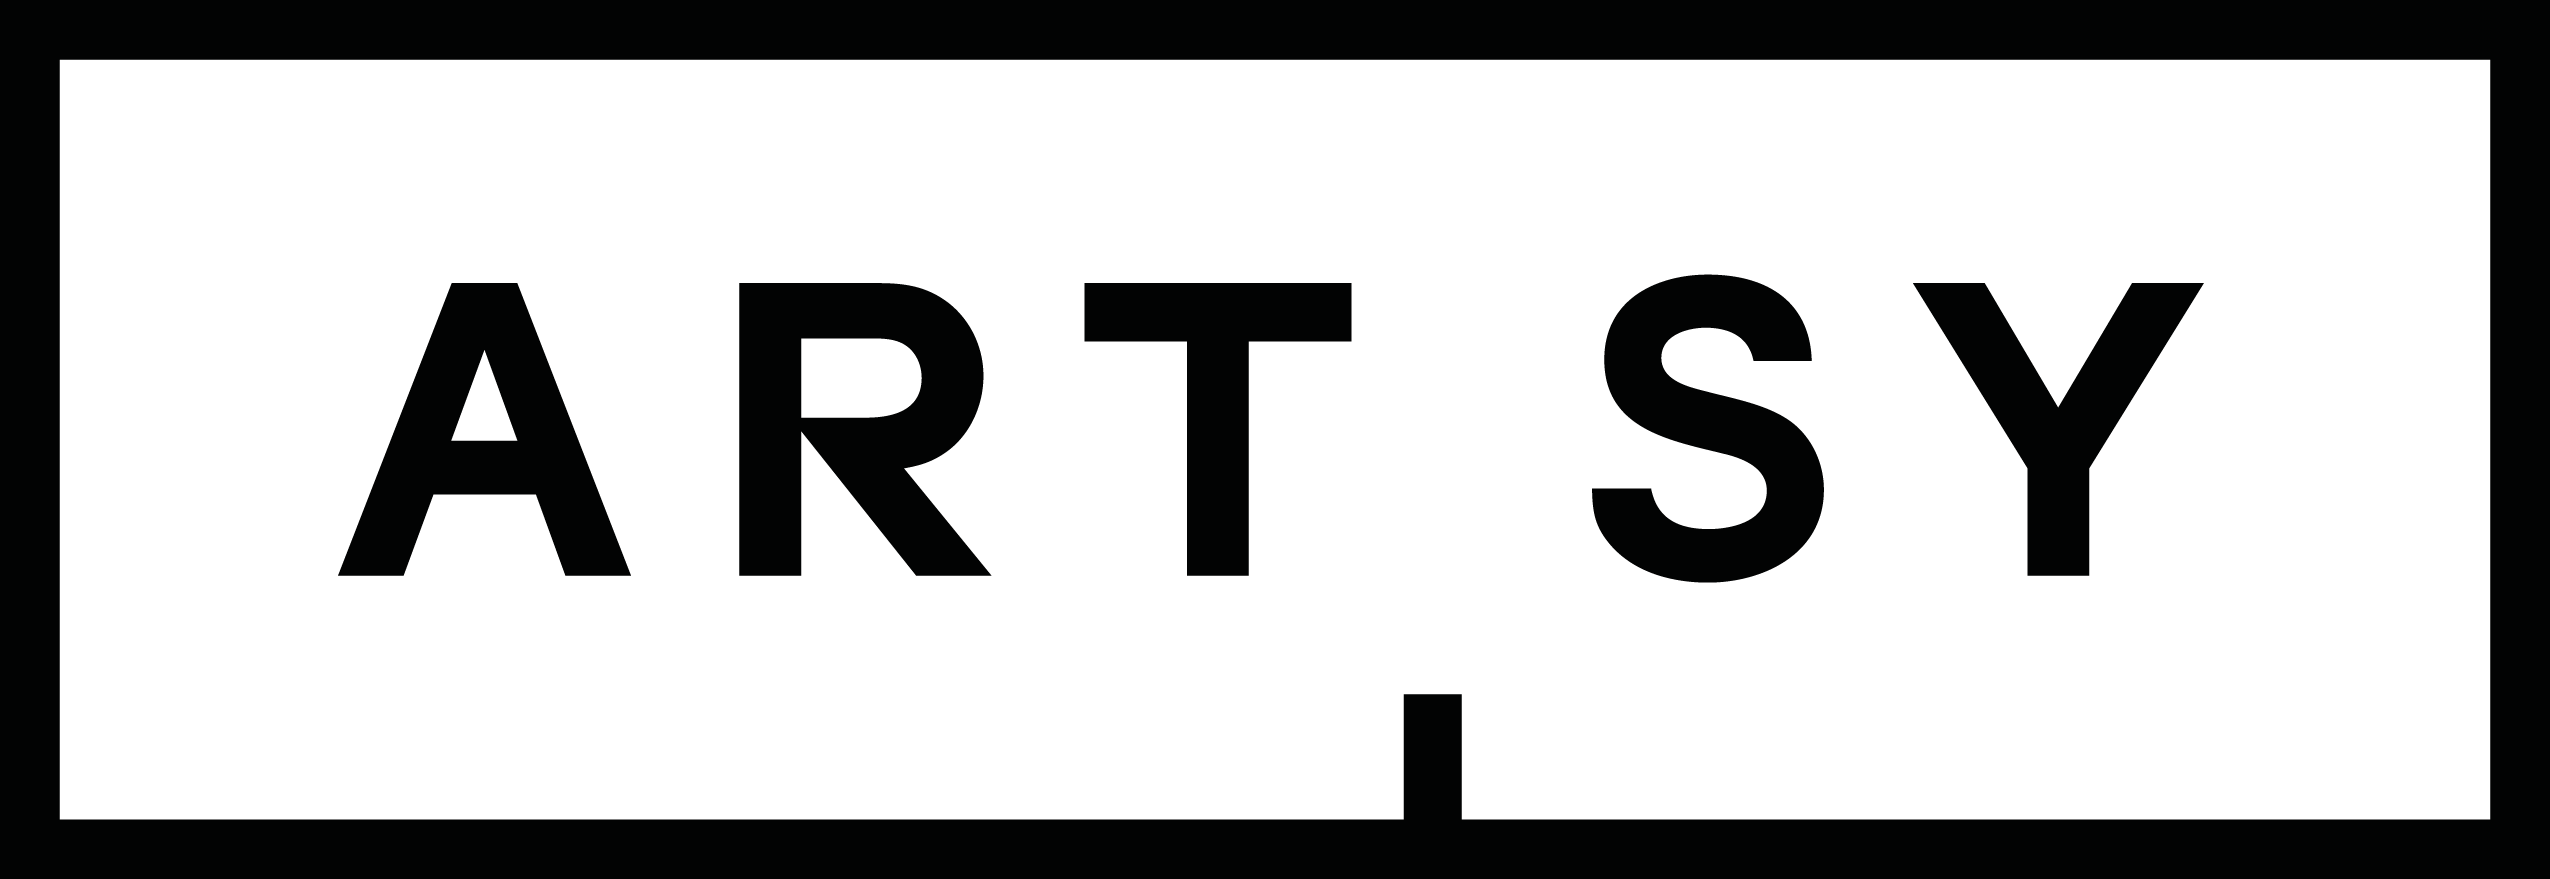 Artsy Logo - Artsy Logo